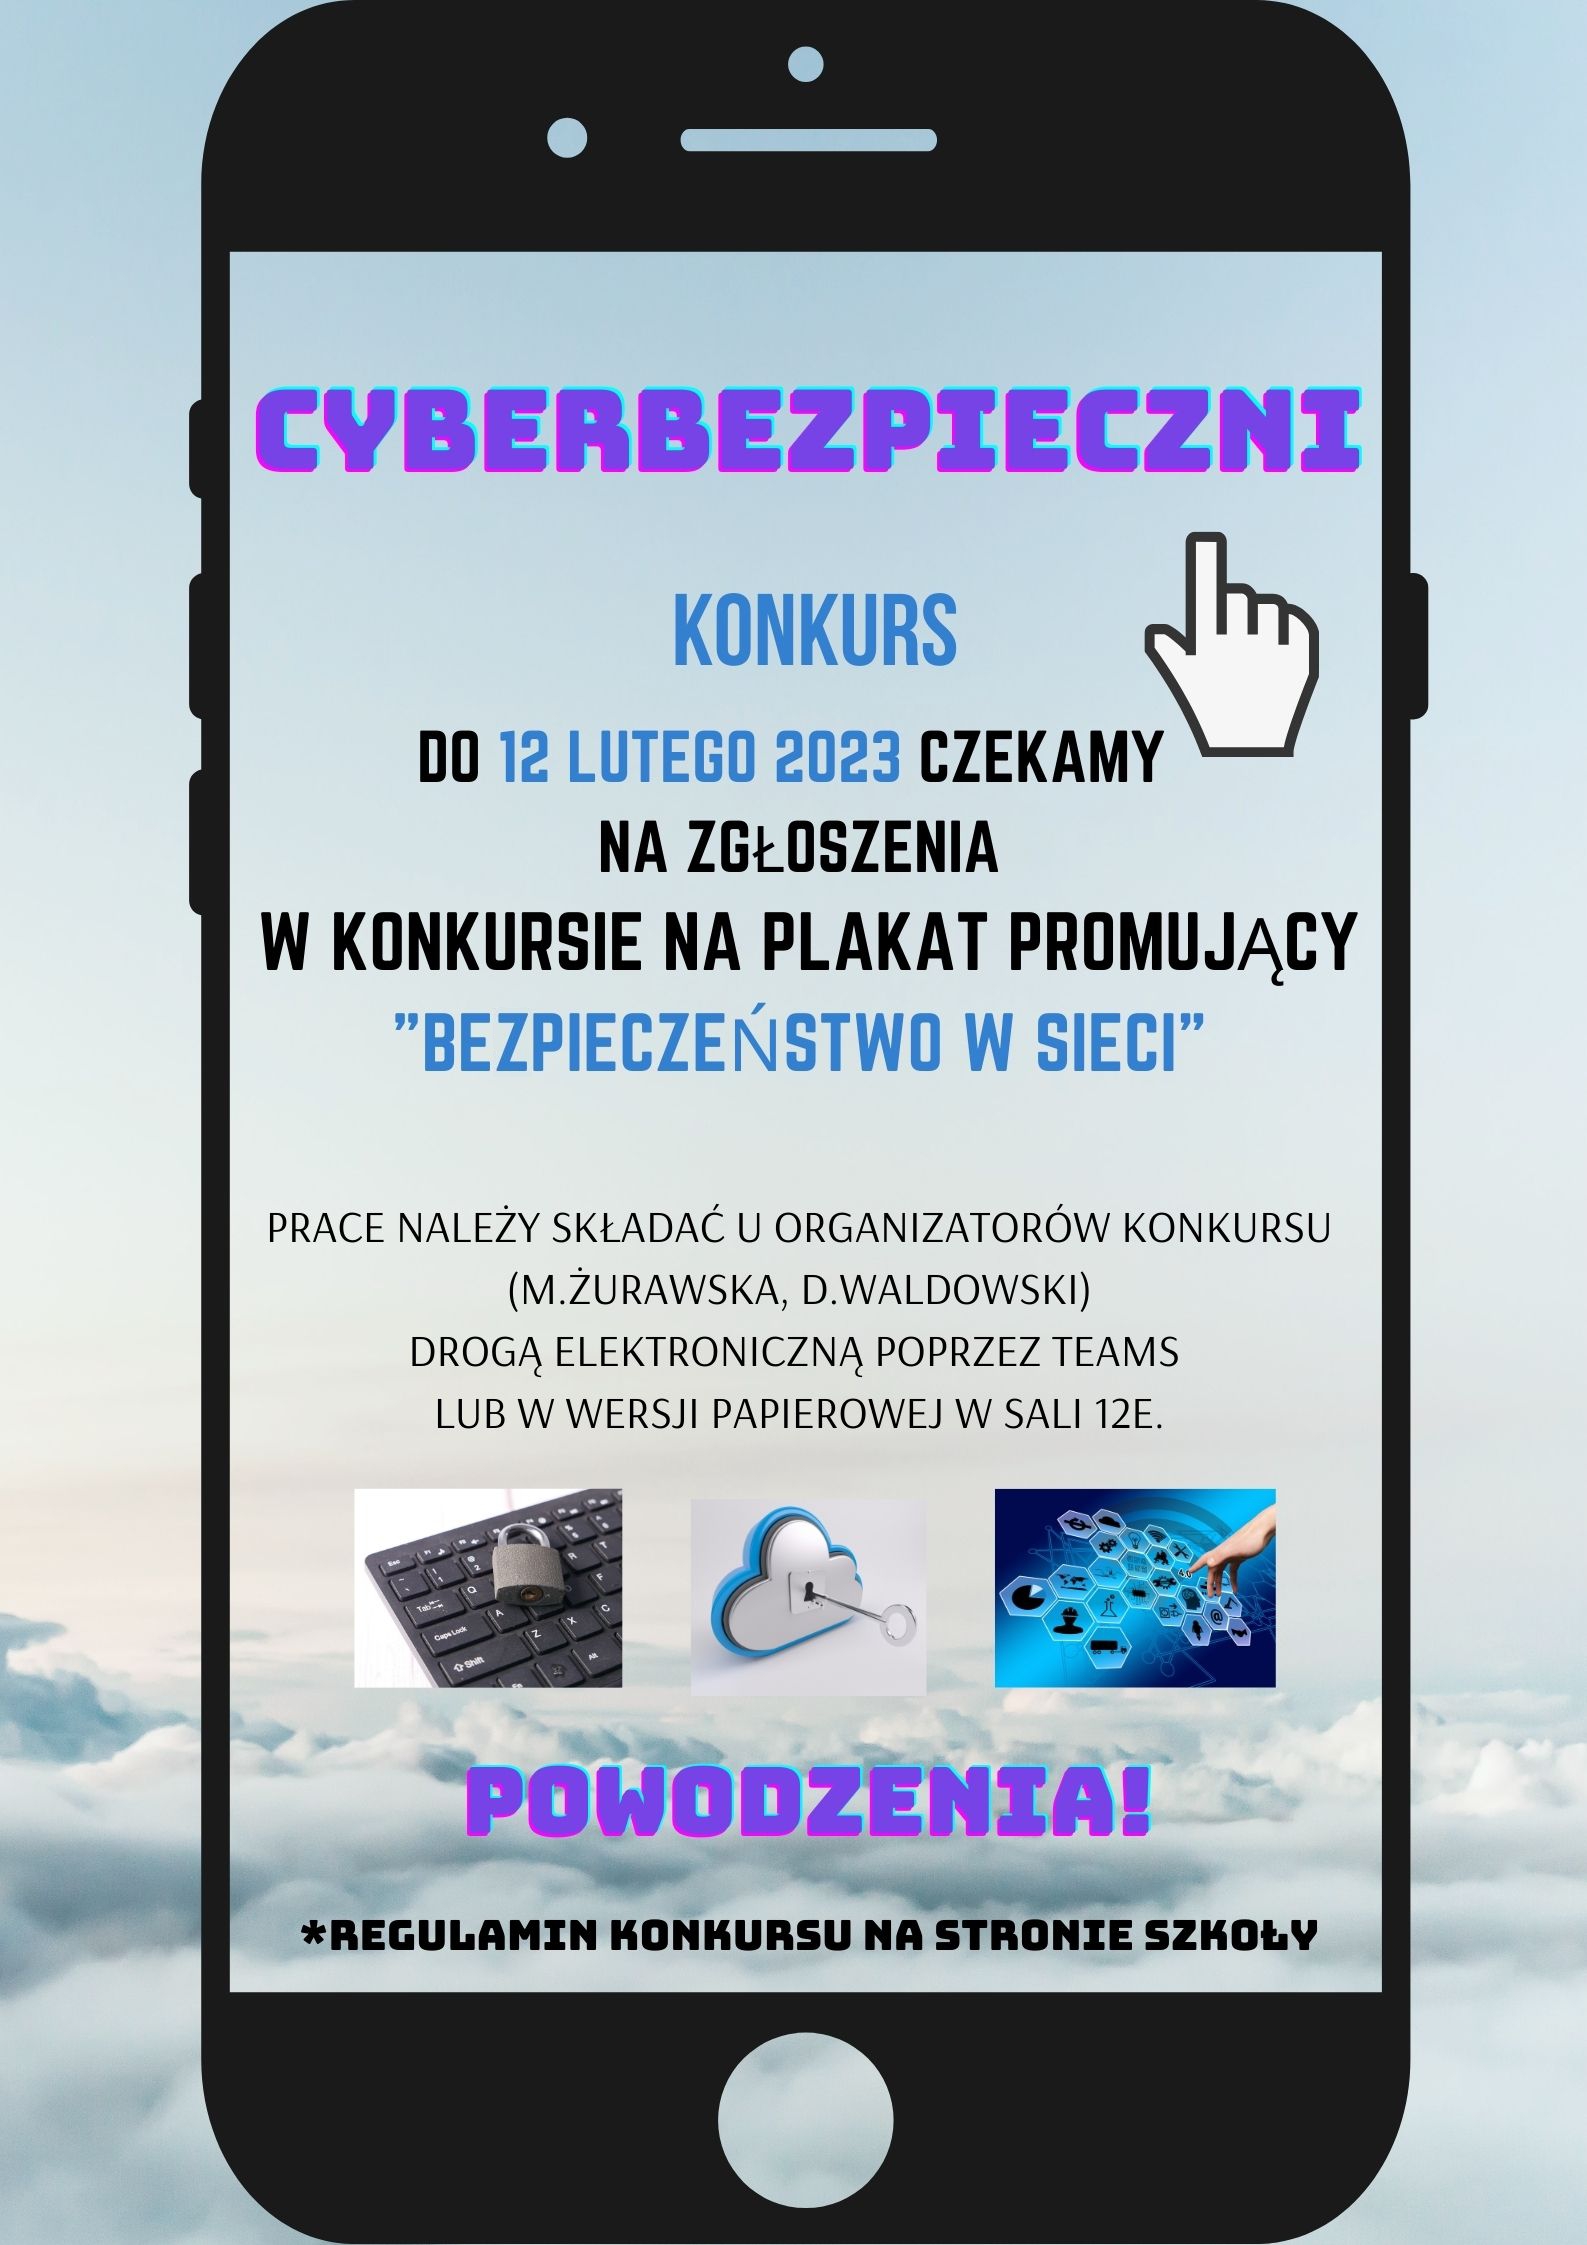 Konkurs - Cyberbezpieczni - plakat na konkurs o bezpieczeństwie w sieci